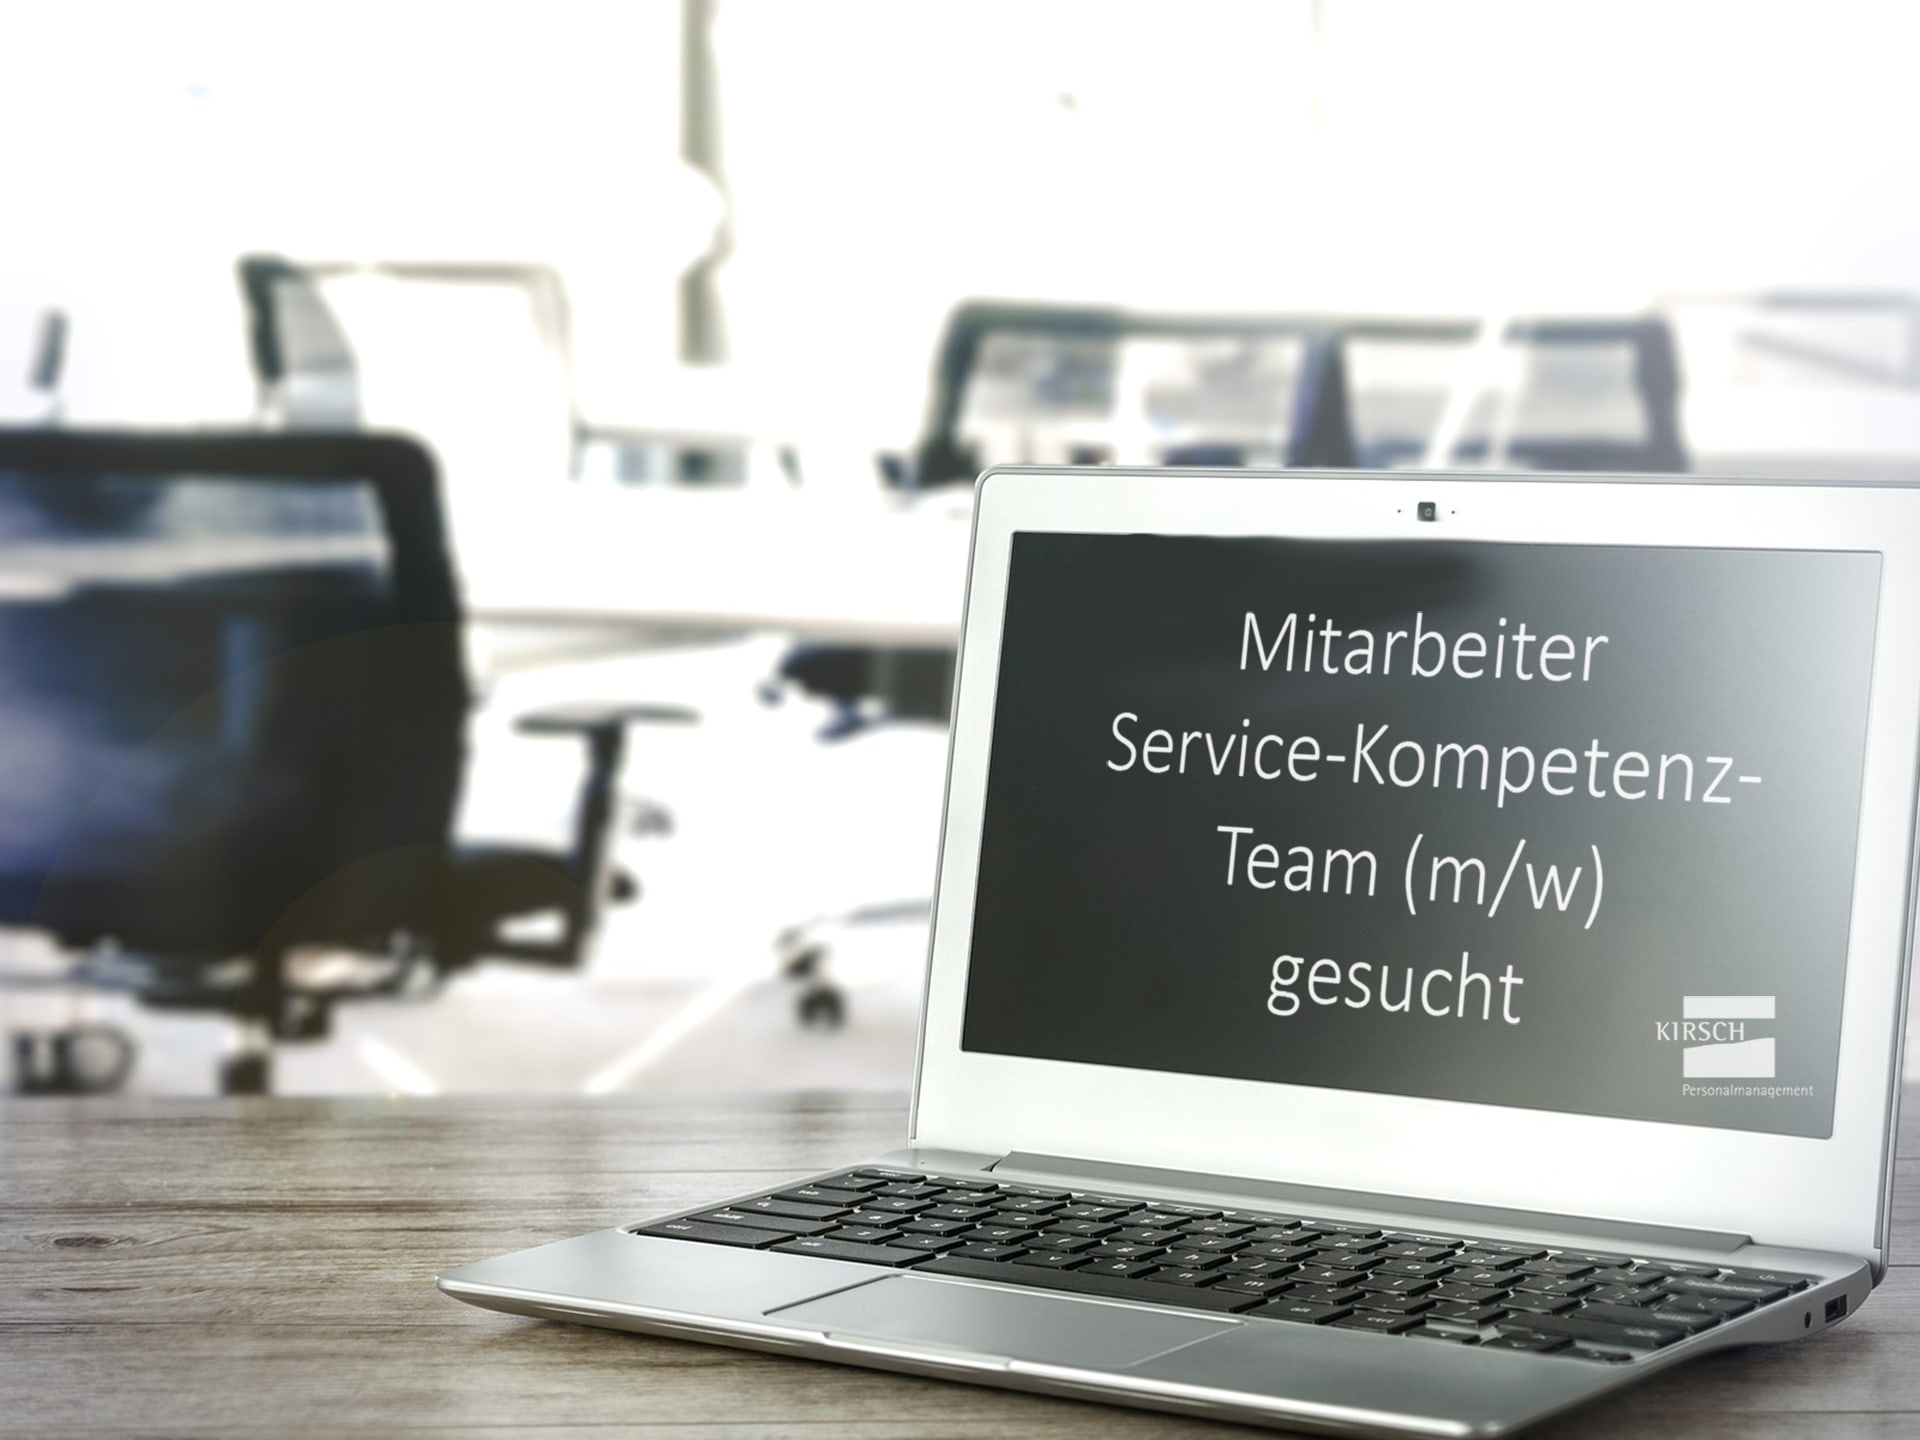 Mitarbeiter Service-Kompetenz-Team gesucht - Kirsch GmbH Personalmanagement